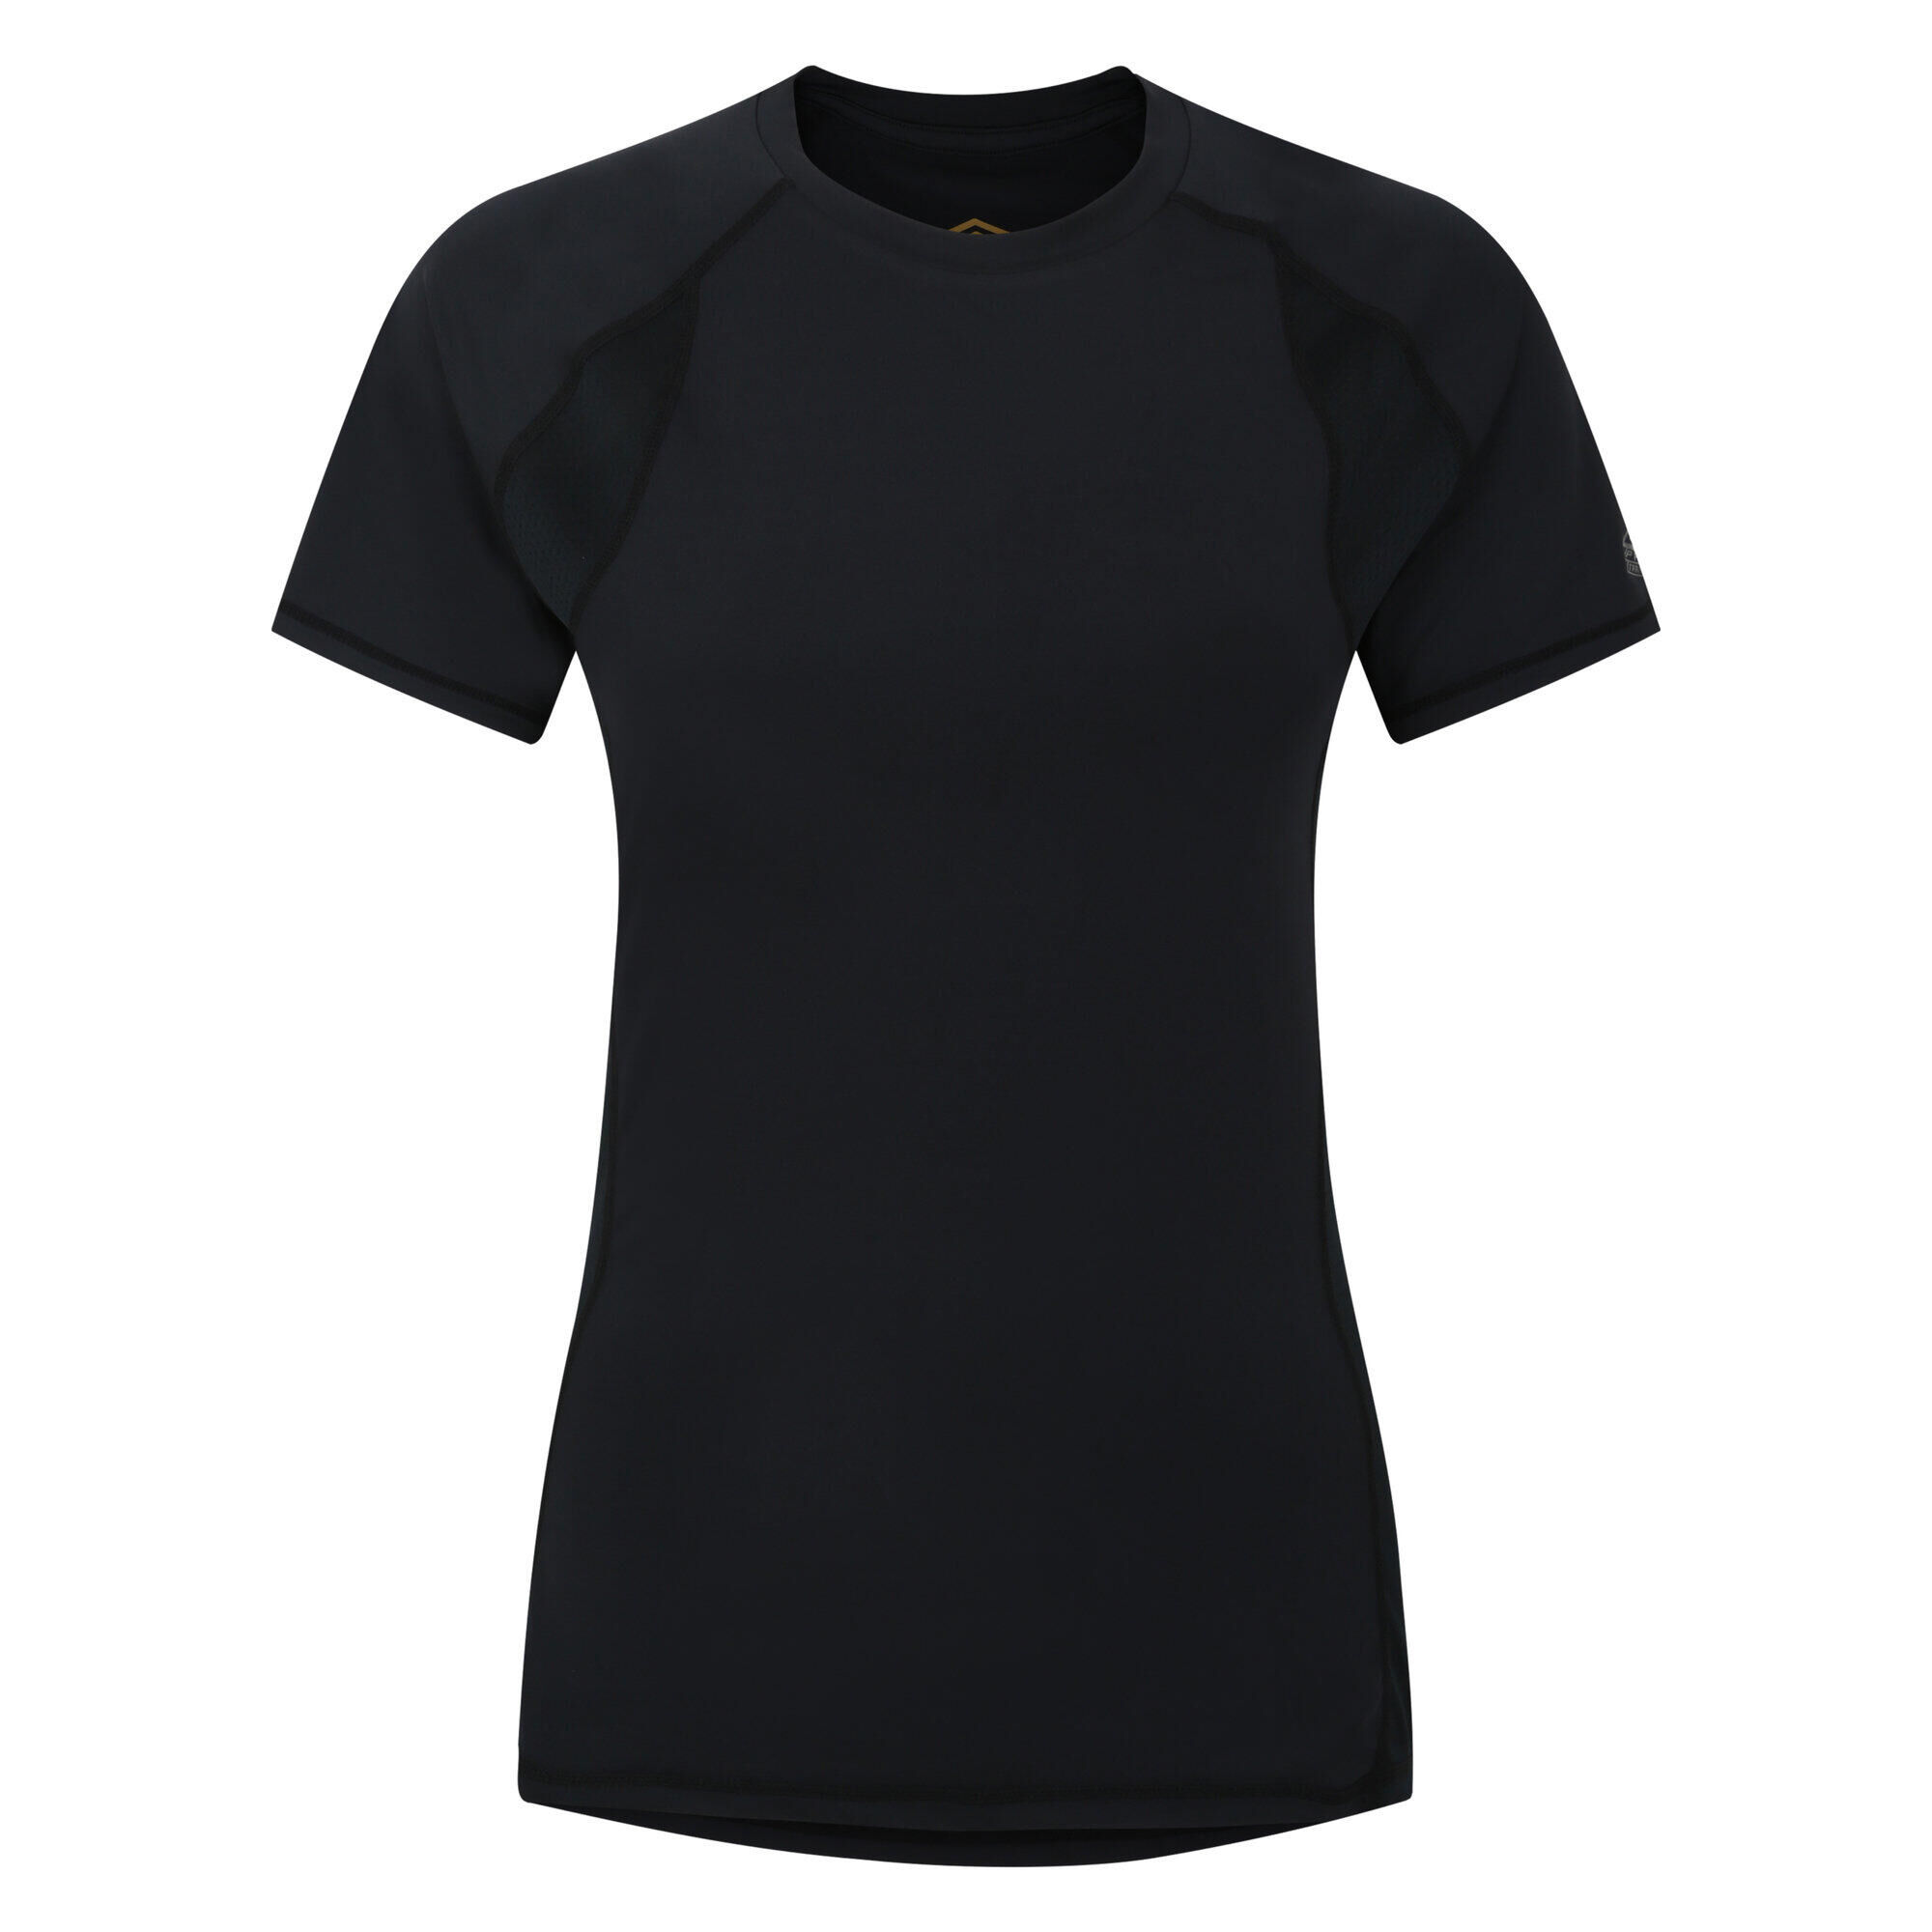 UMBRO Womens/Ladies Pro Training Polyester TShirt (Black)